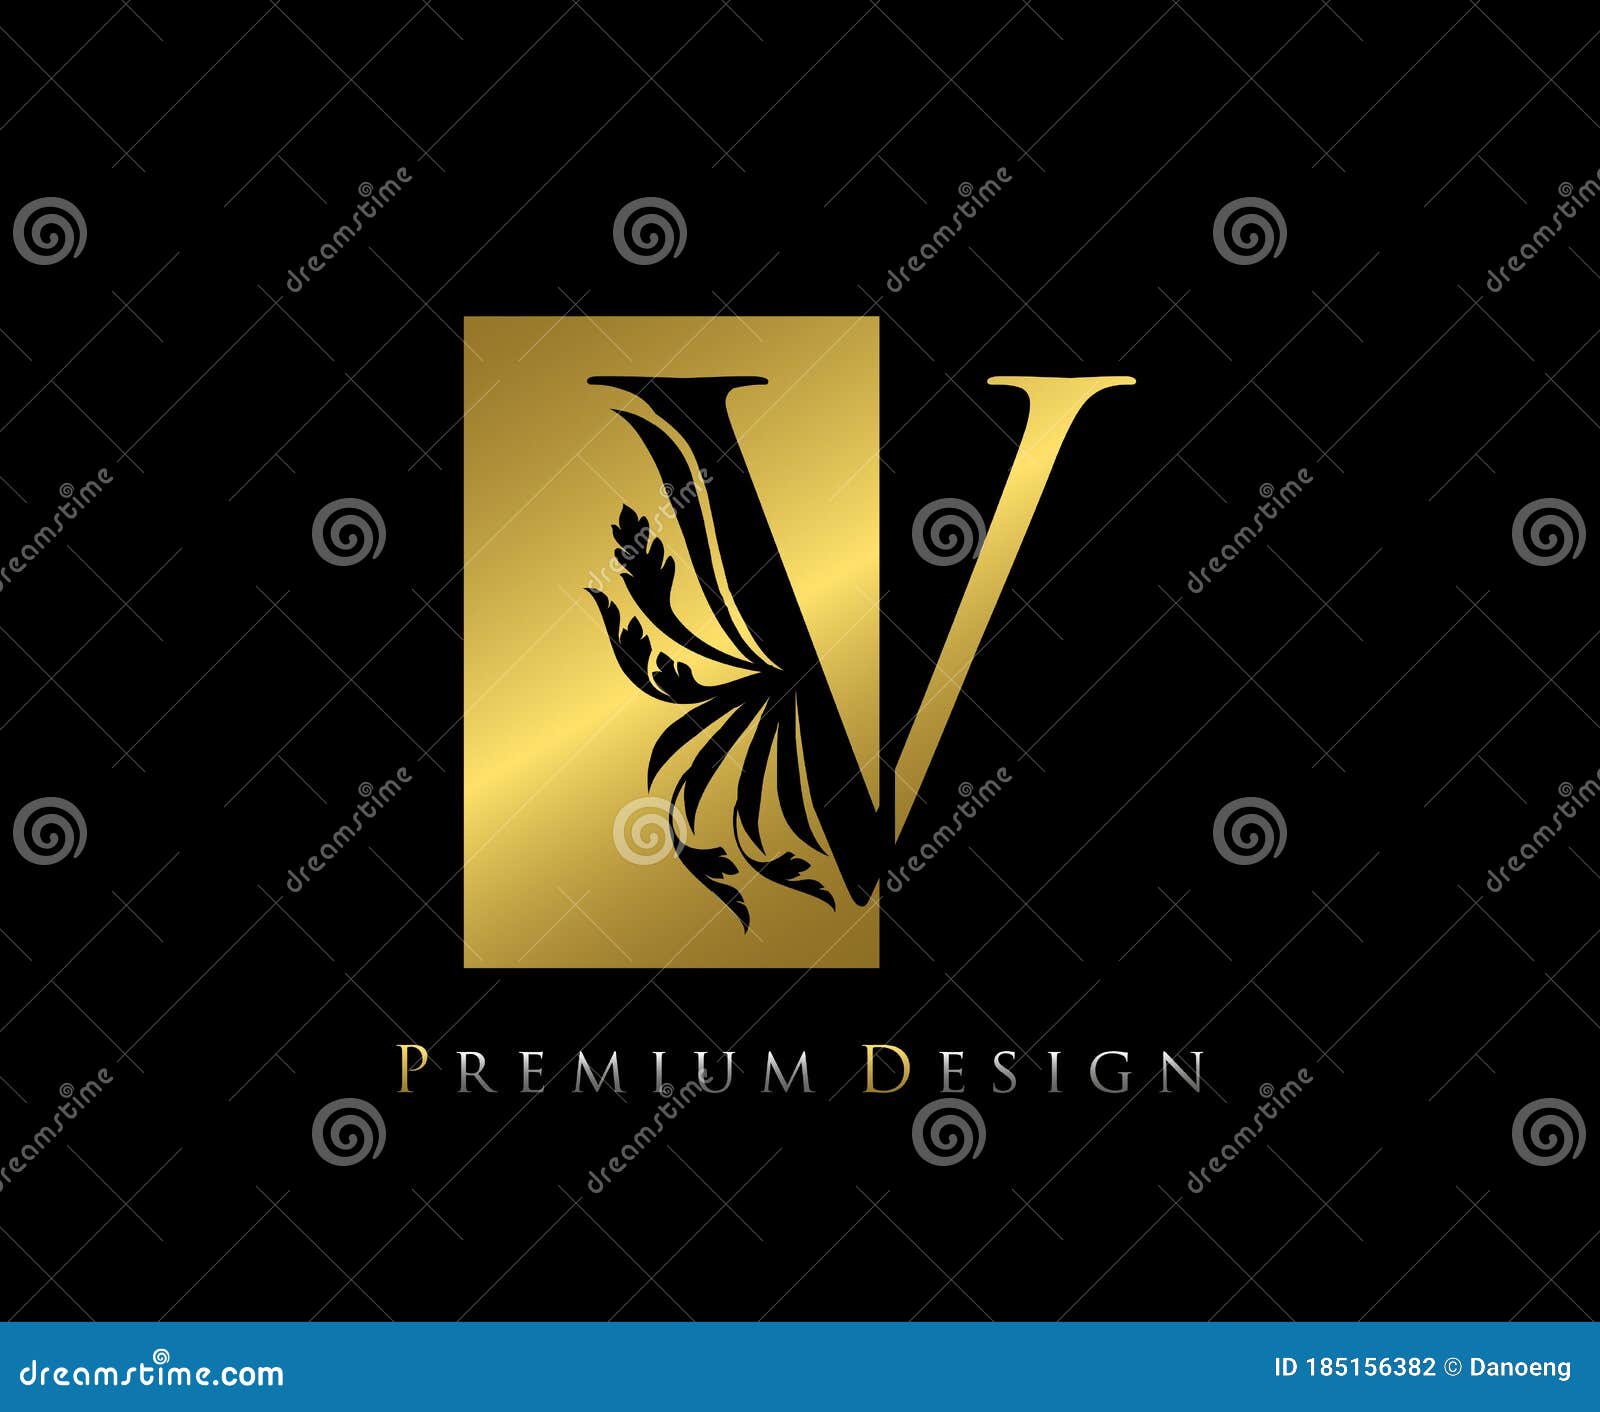 Golden Ornamental Alphabet V Letter Logo Design. Luxurious Golden